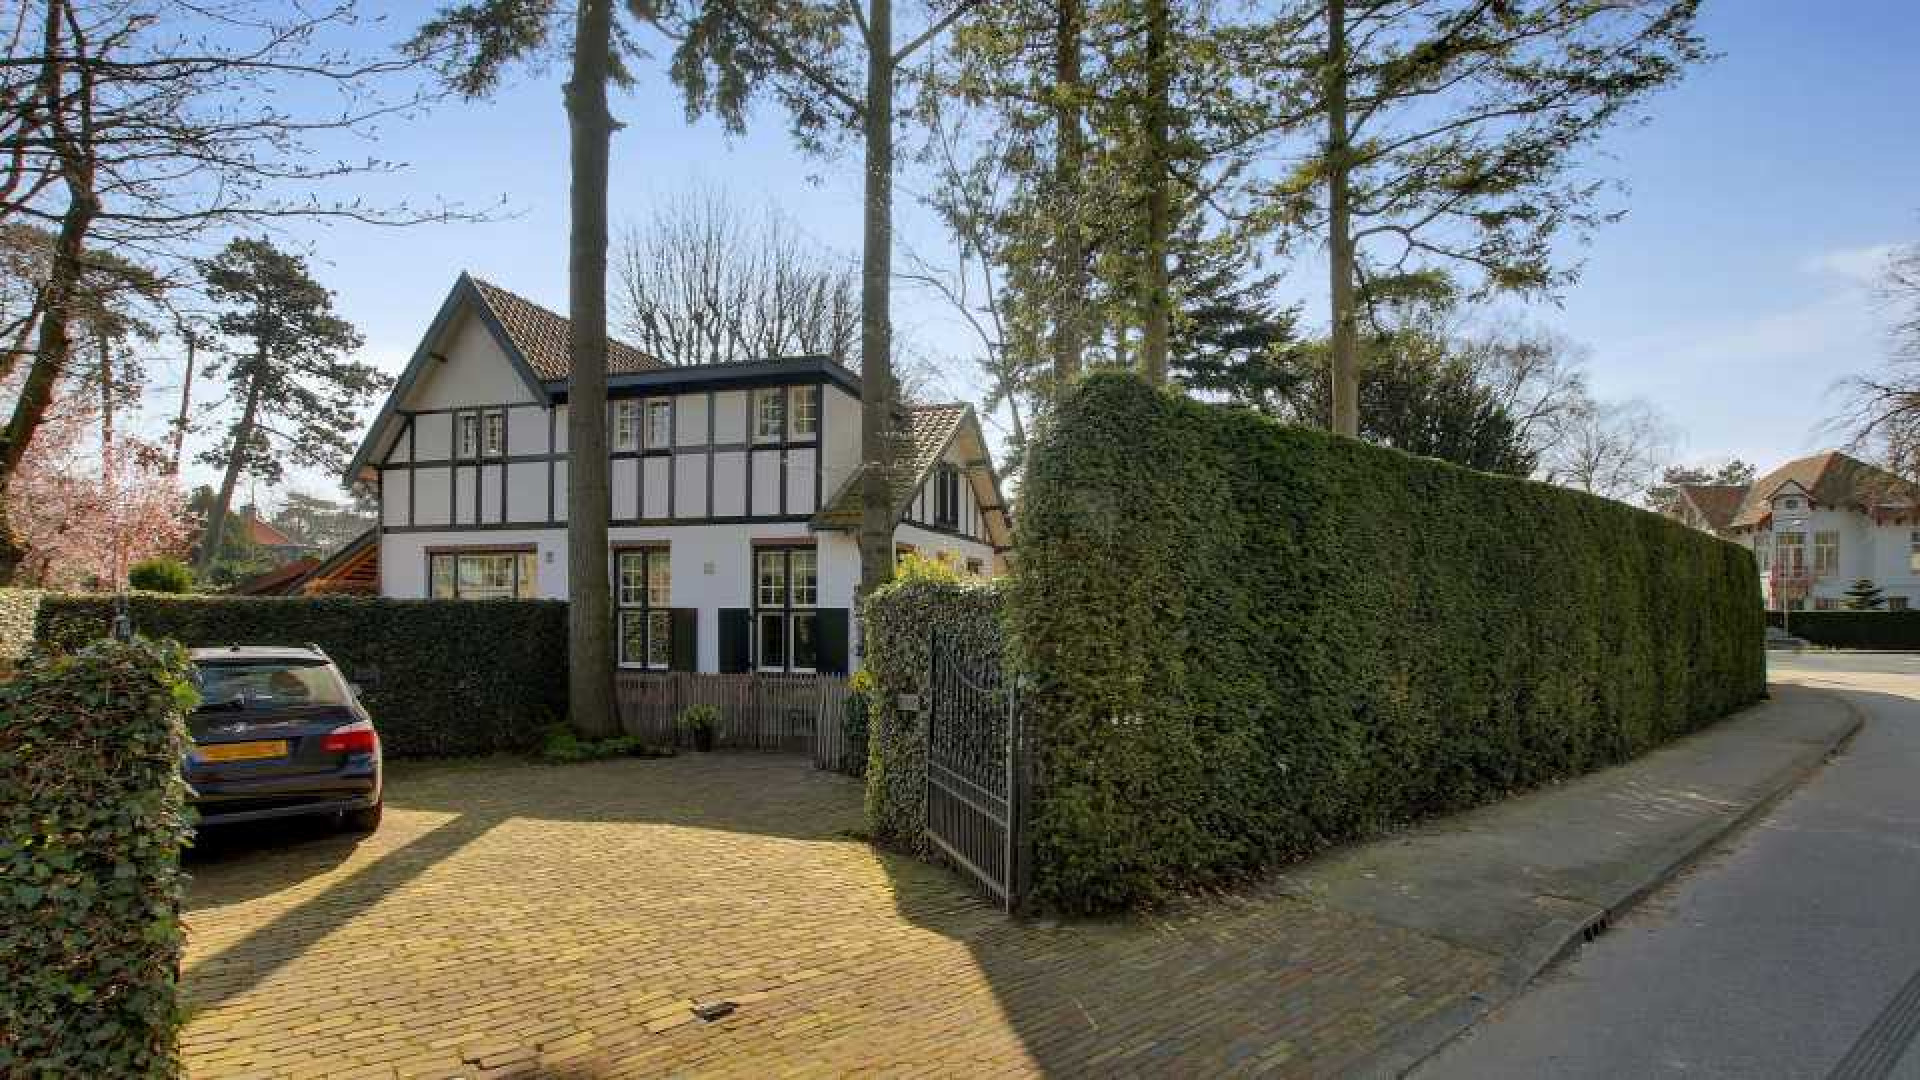 Hart van Nederland presentatrice Gallyon van Vessem koopt koloniaal landhuis. Zie foto's 3